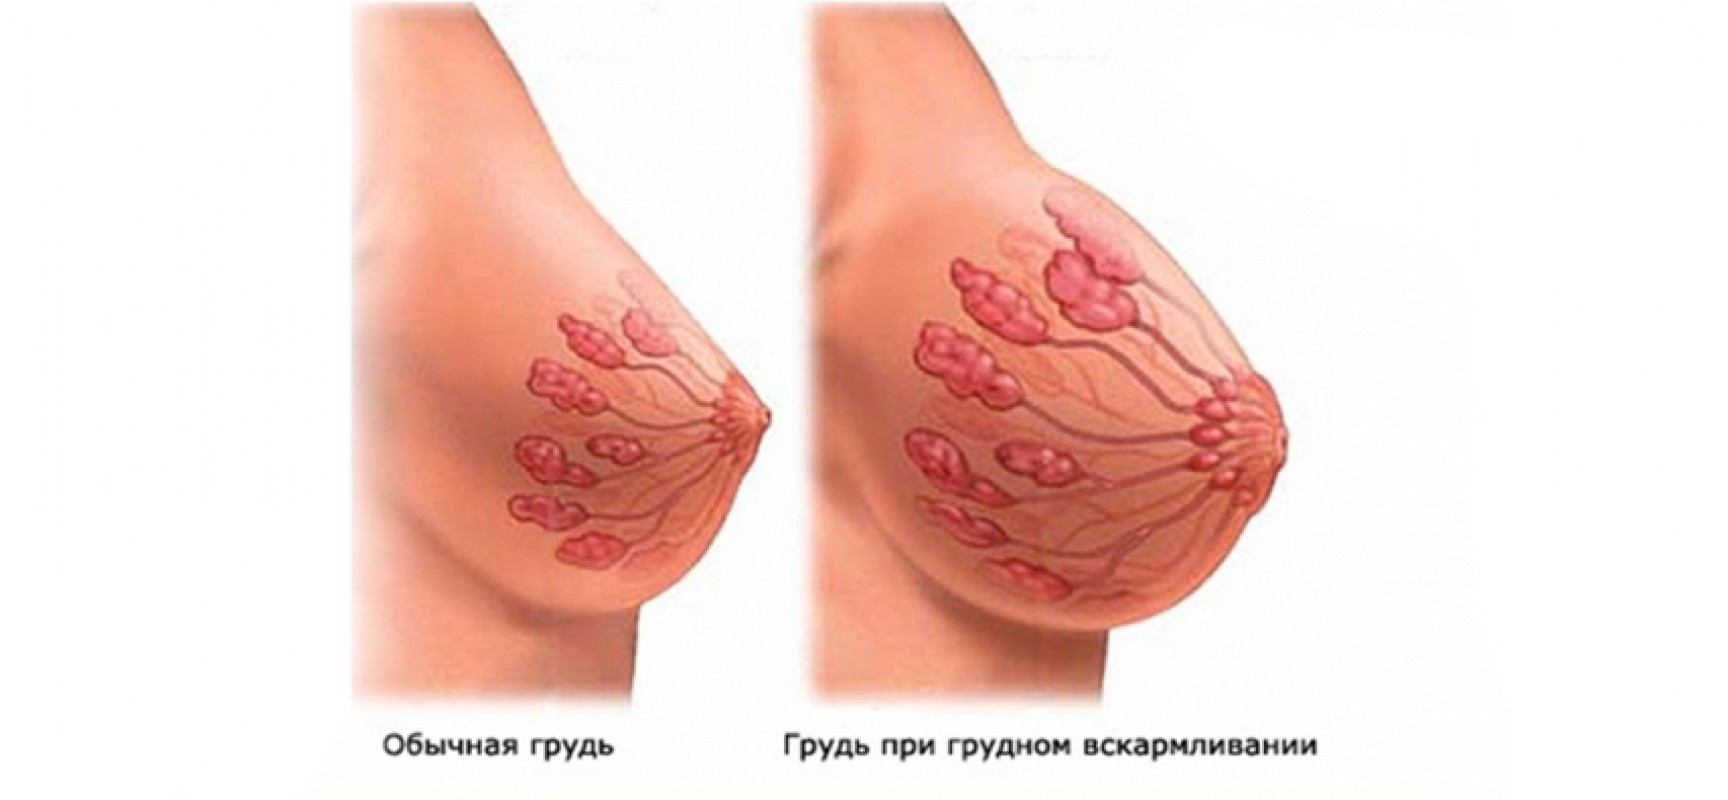 как лечить воспаление груди у женщин фото 107